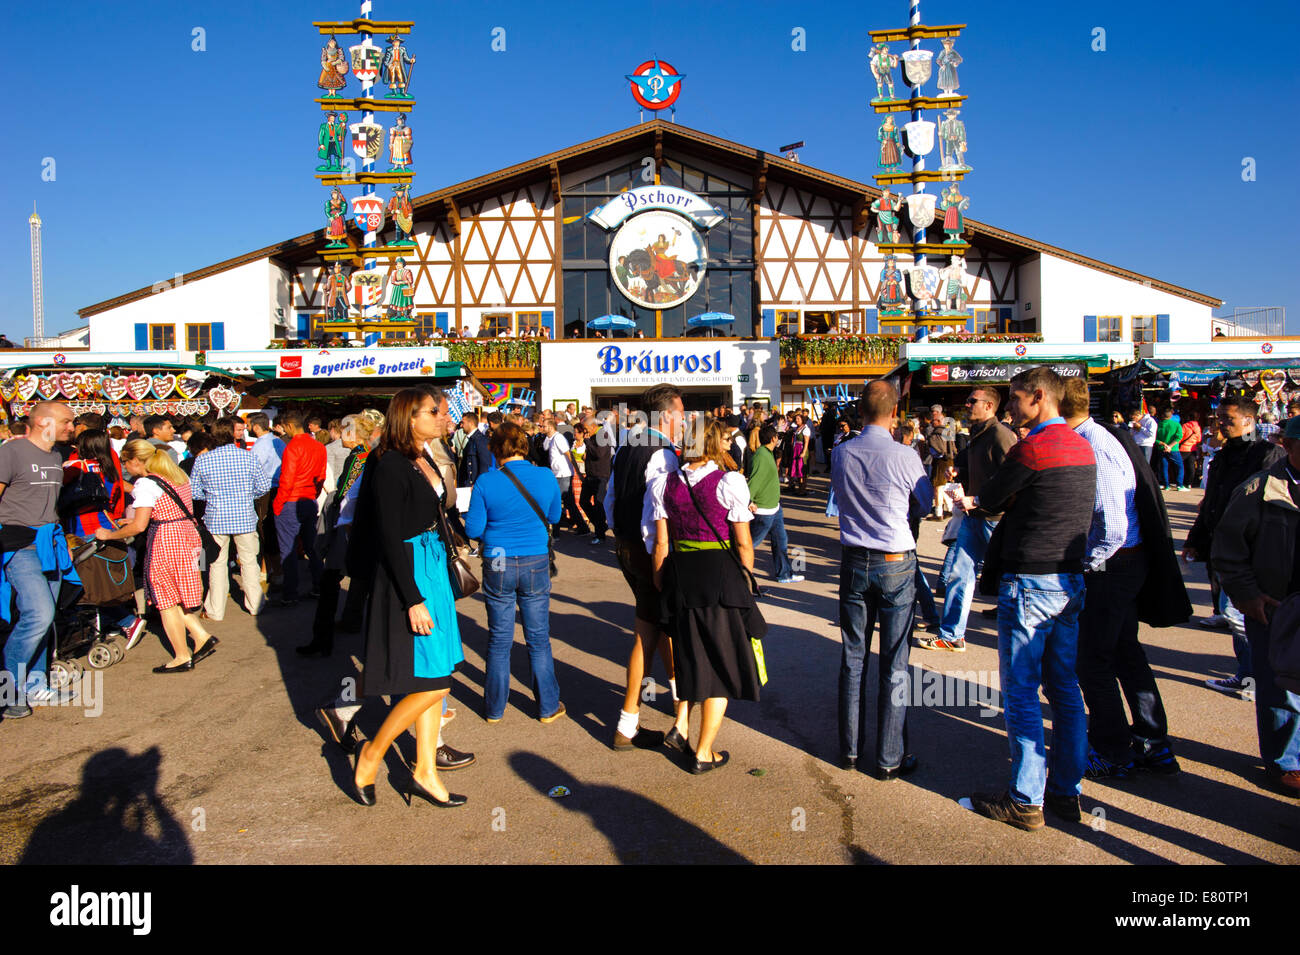 Das Oktoberfest in München ist das größte Bierfest der Welt mit vielen Vergnügungsparks Hütten, Bierzelte und Karussells. Stockfoto